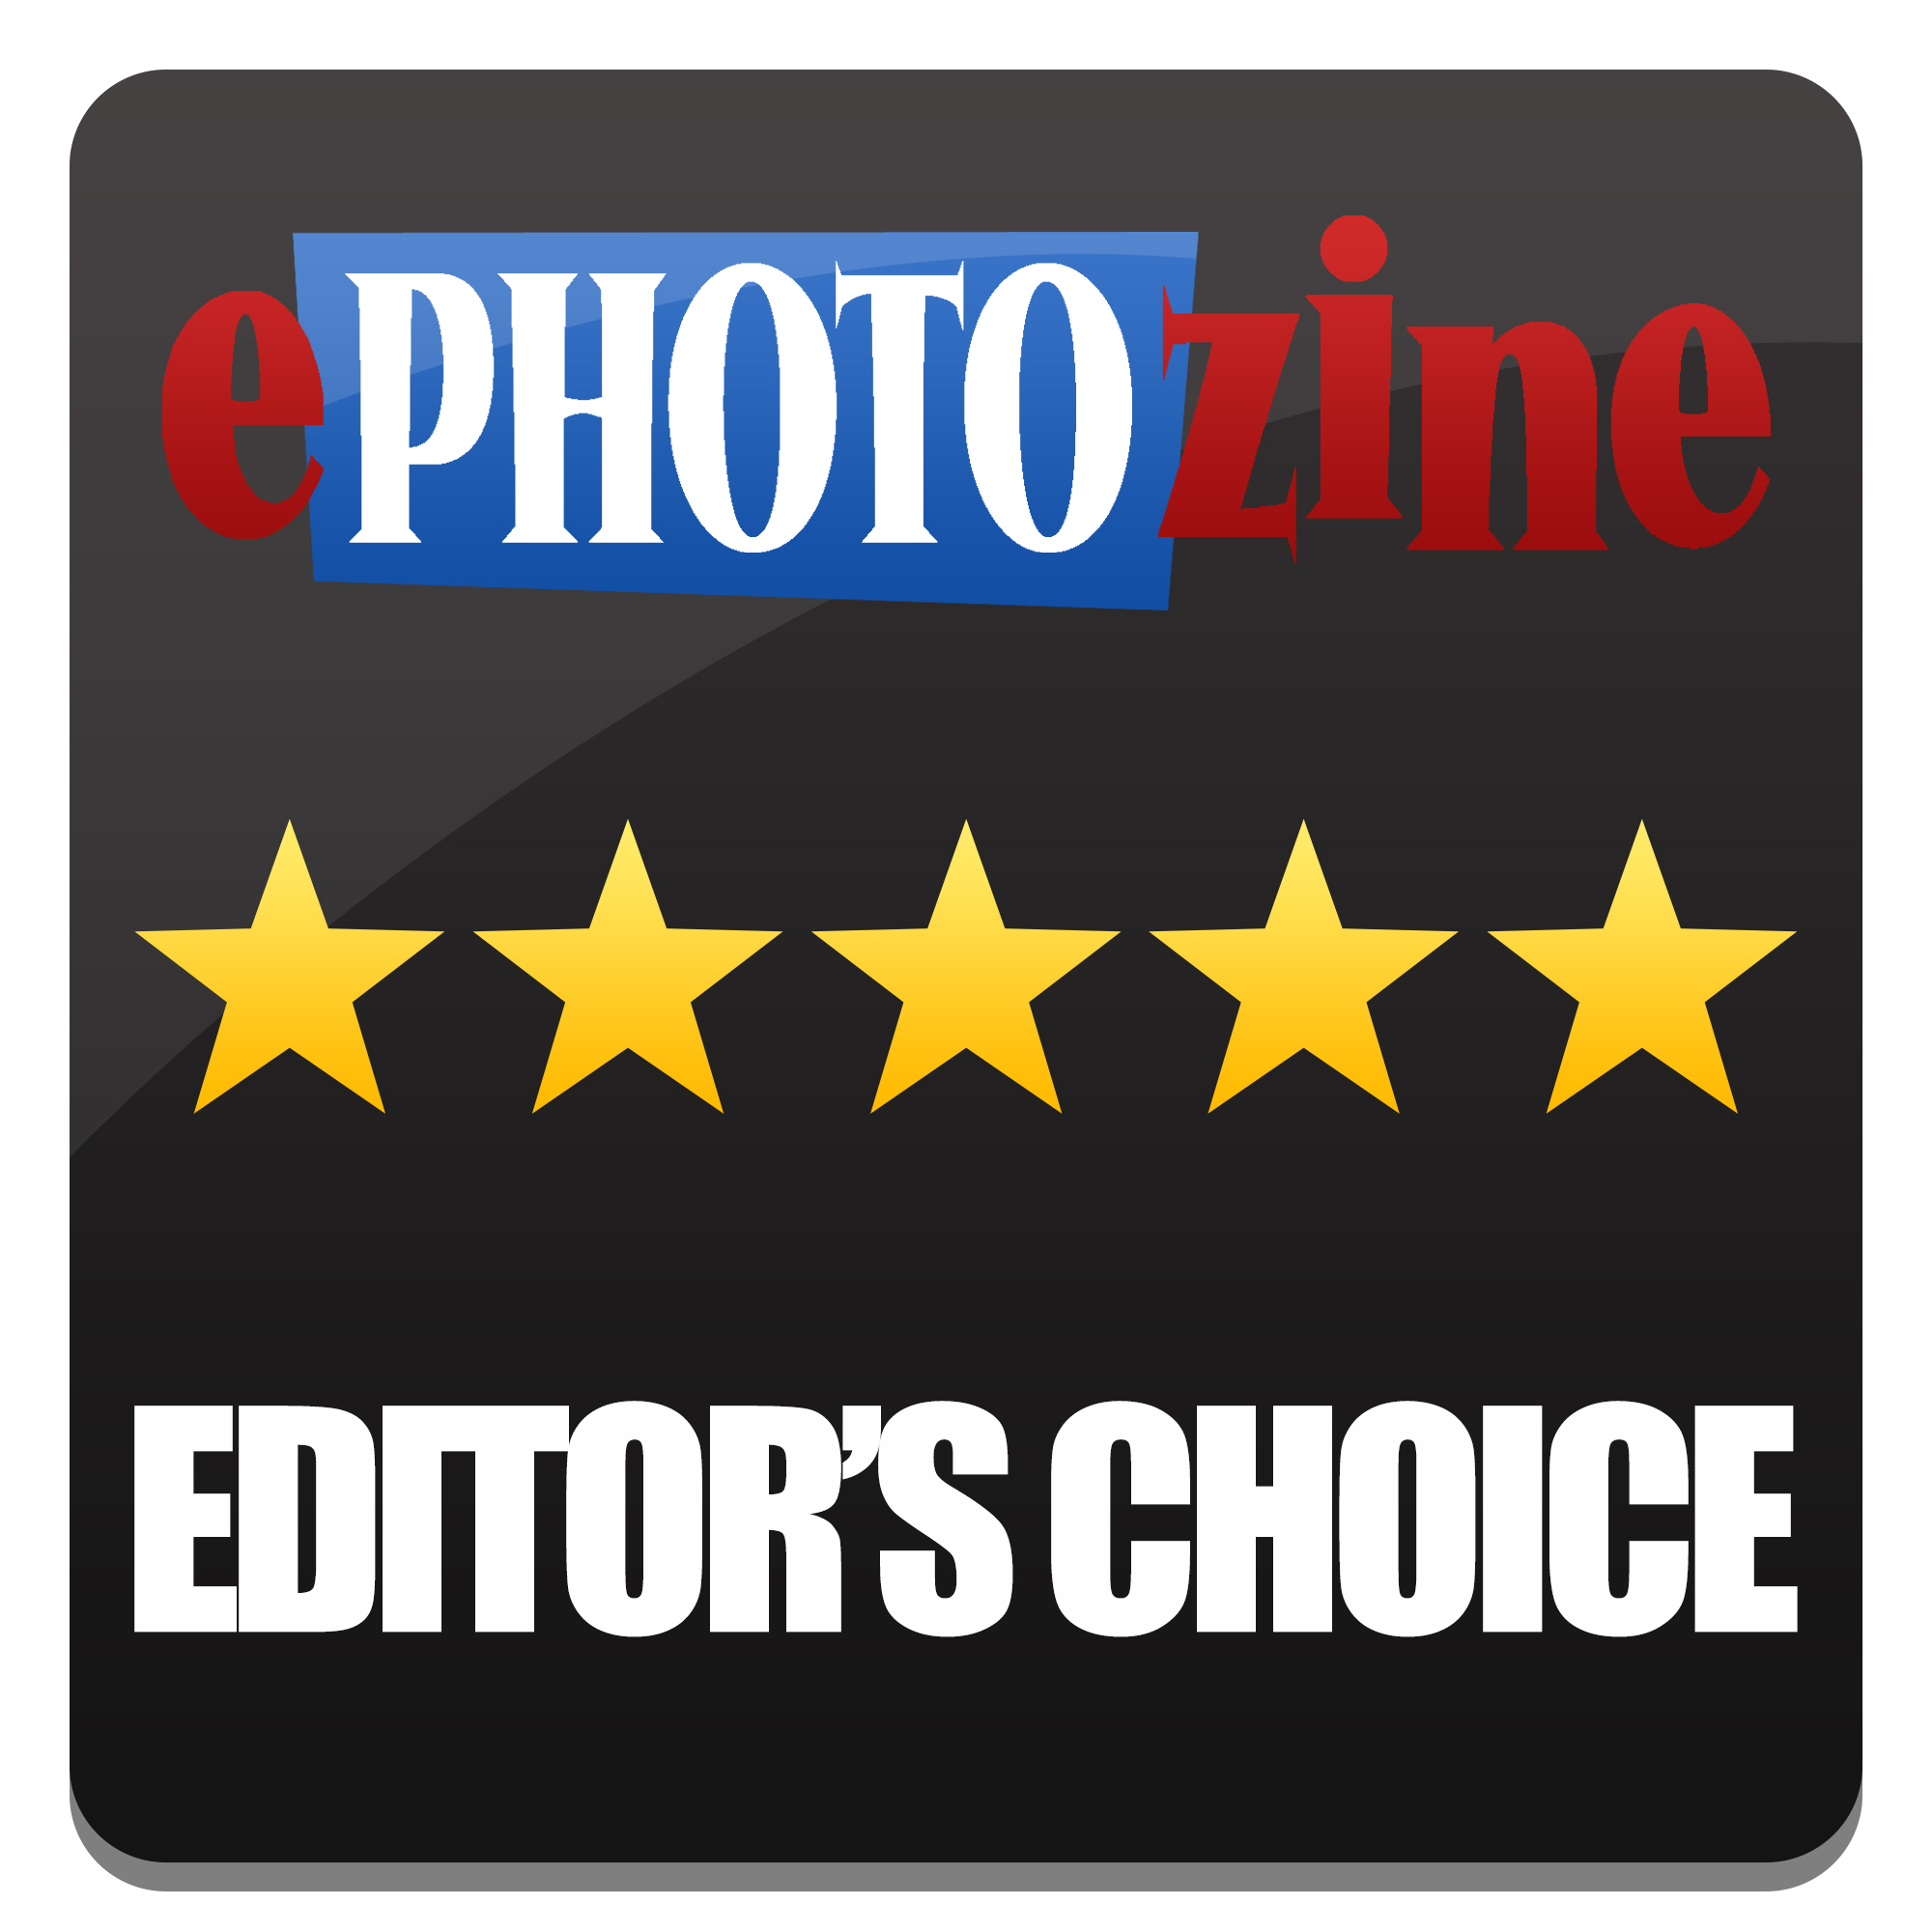 ePhotozine Editor's Choice